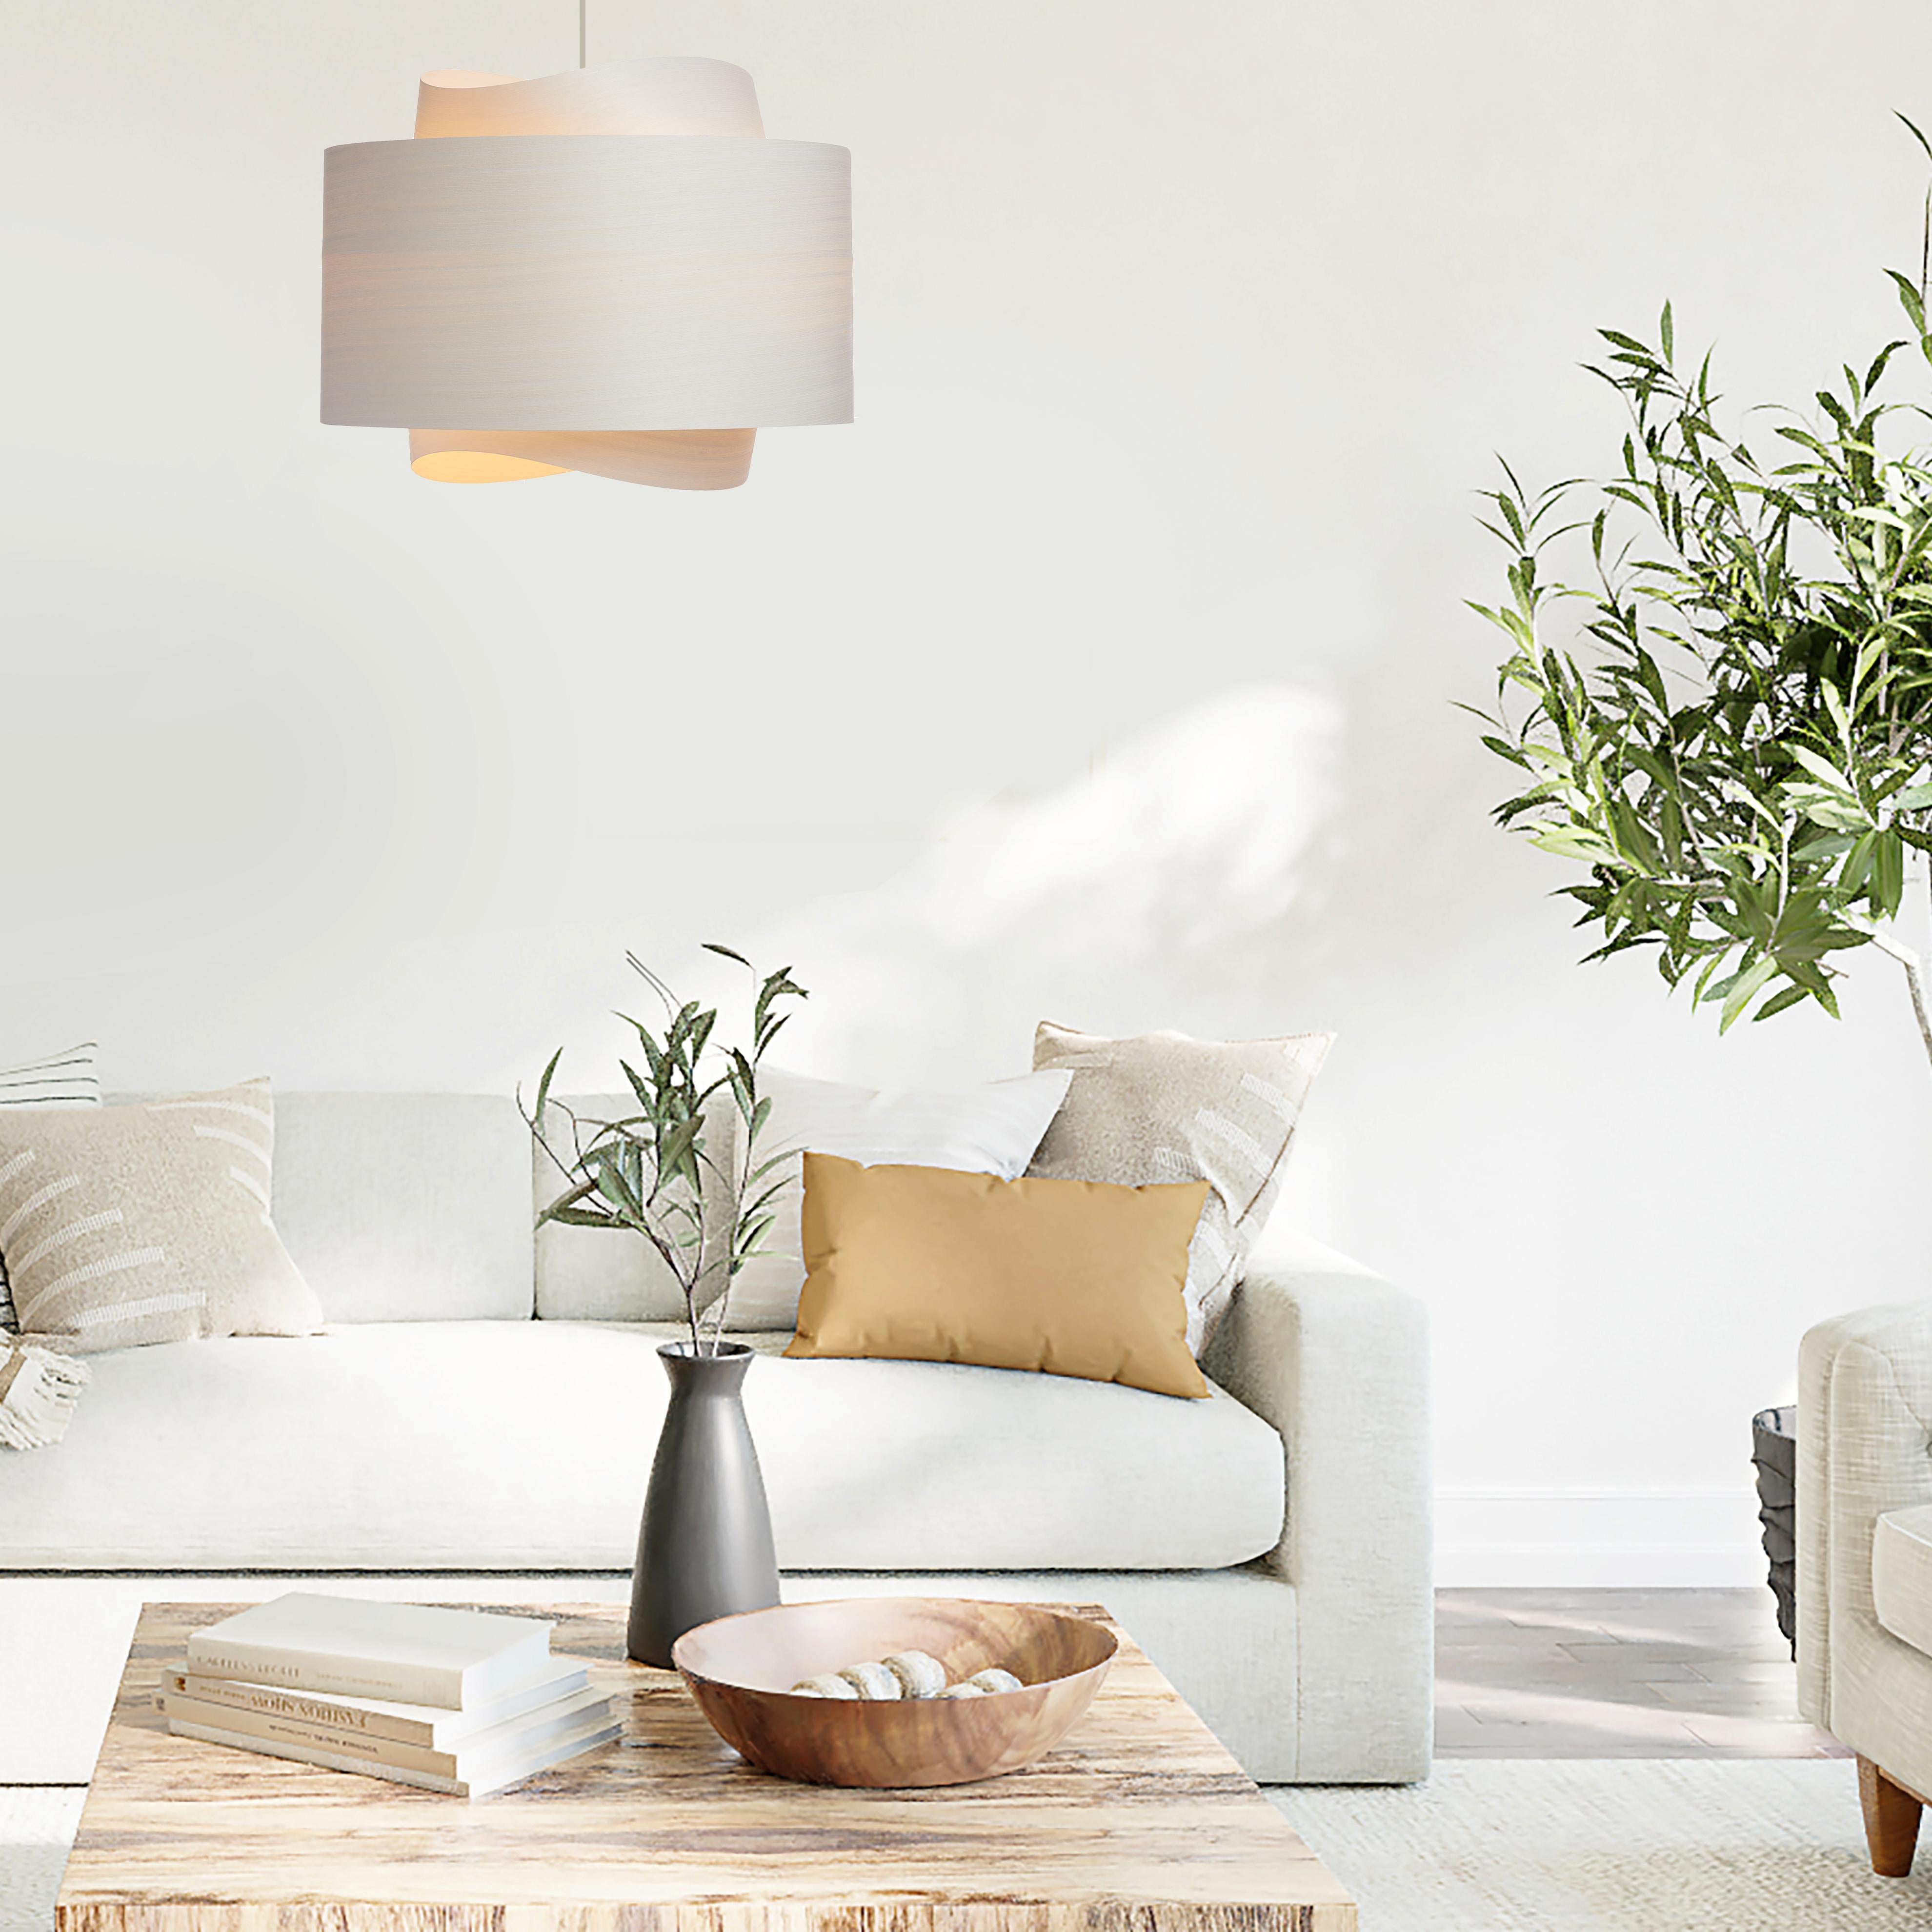 Die Leuchte BOWEN ist ein beeindruckendes Beispiel für zeitgenössisches Mid-Century Modern Design. Mit ihrer minimalistischen Silhouette, den warmen Weißtönen und der einzigartigen Form verleiht diese Pendelleuchte jedem Raum einen Hauch von